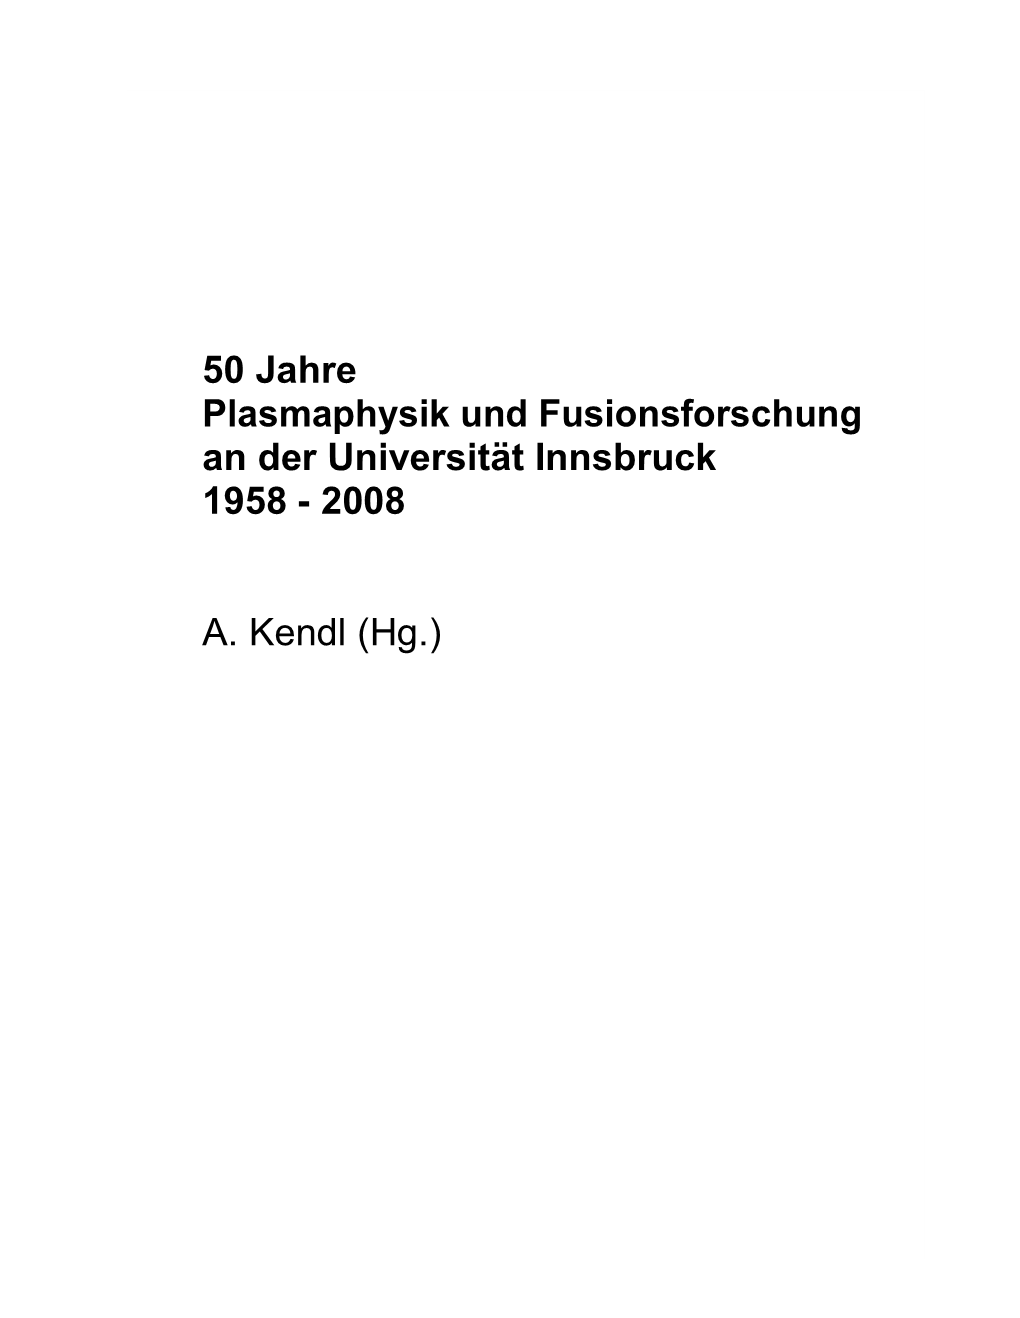 50 Jahre Plasmaphysik Und Fusionsforschung an Der Universität Innsbruck 1958 - 2008